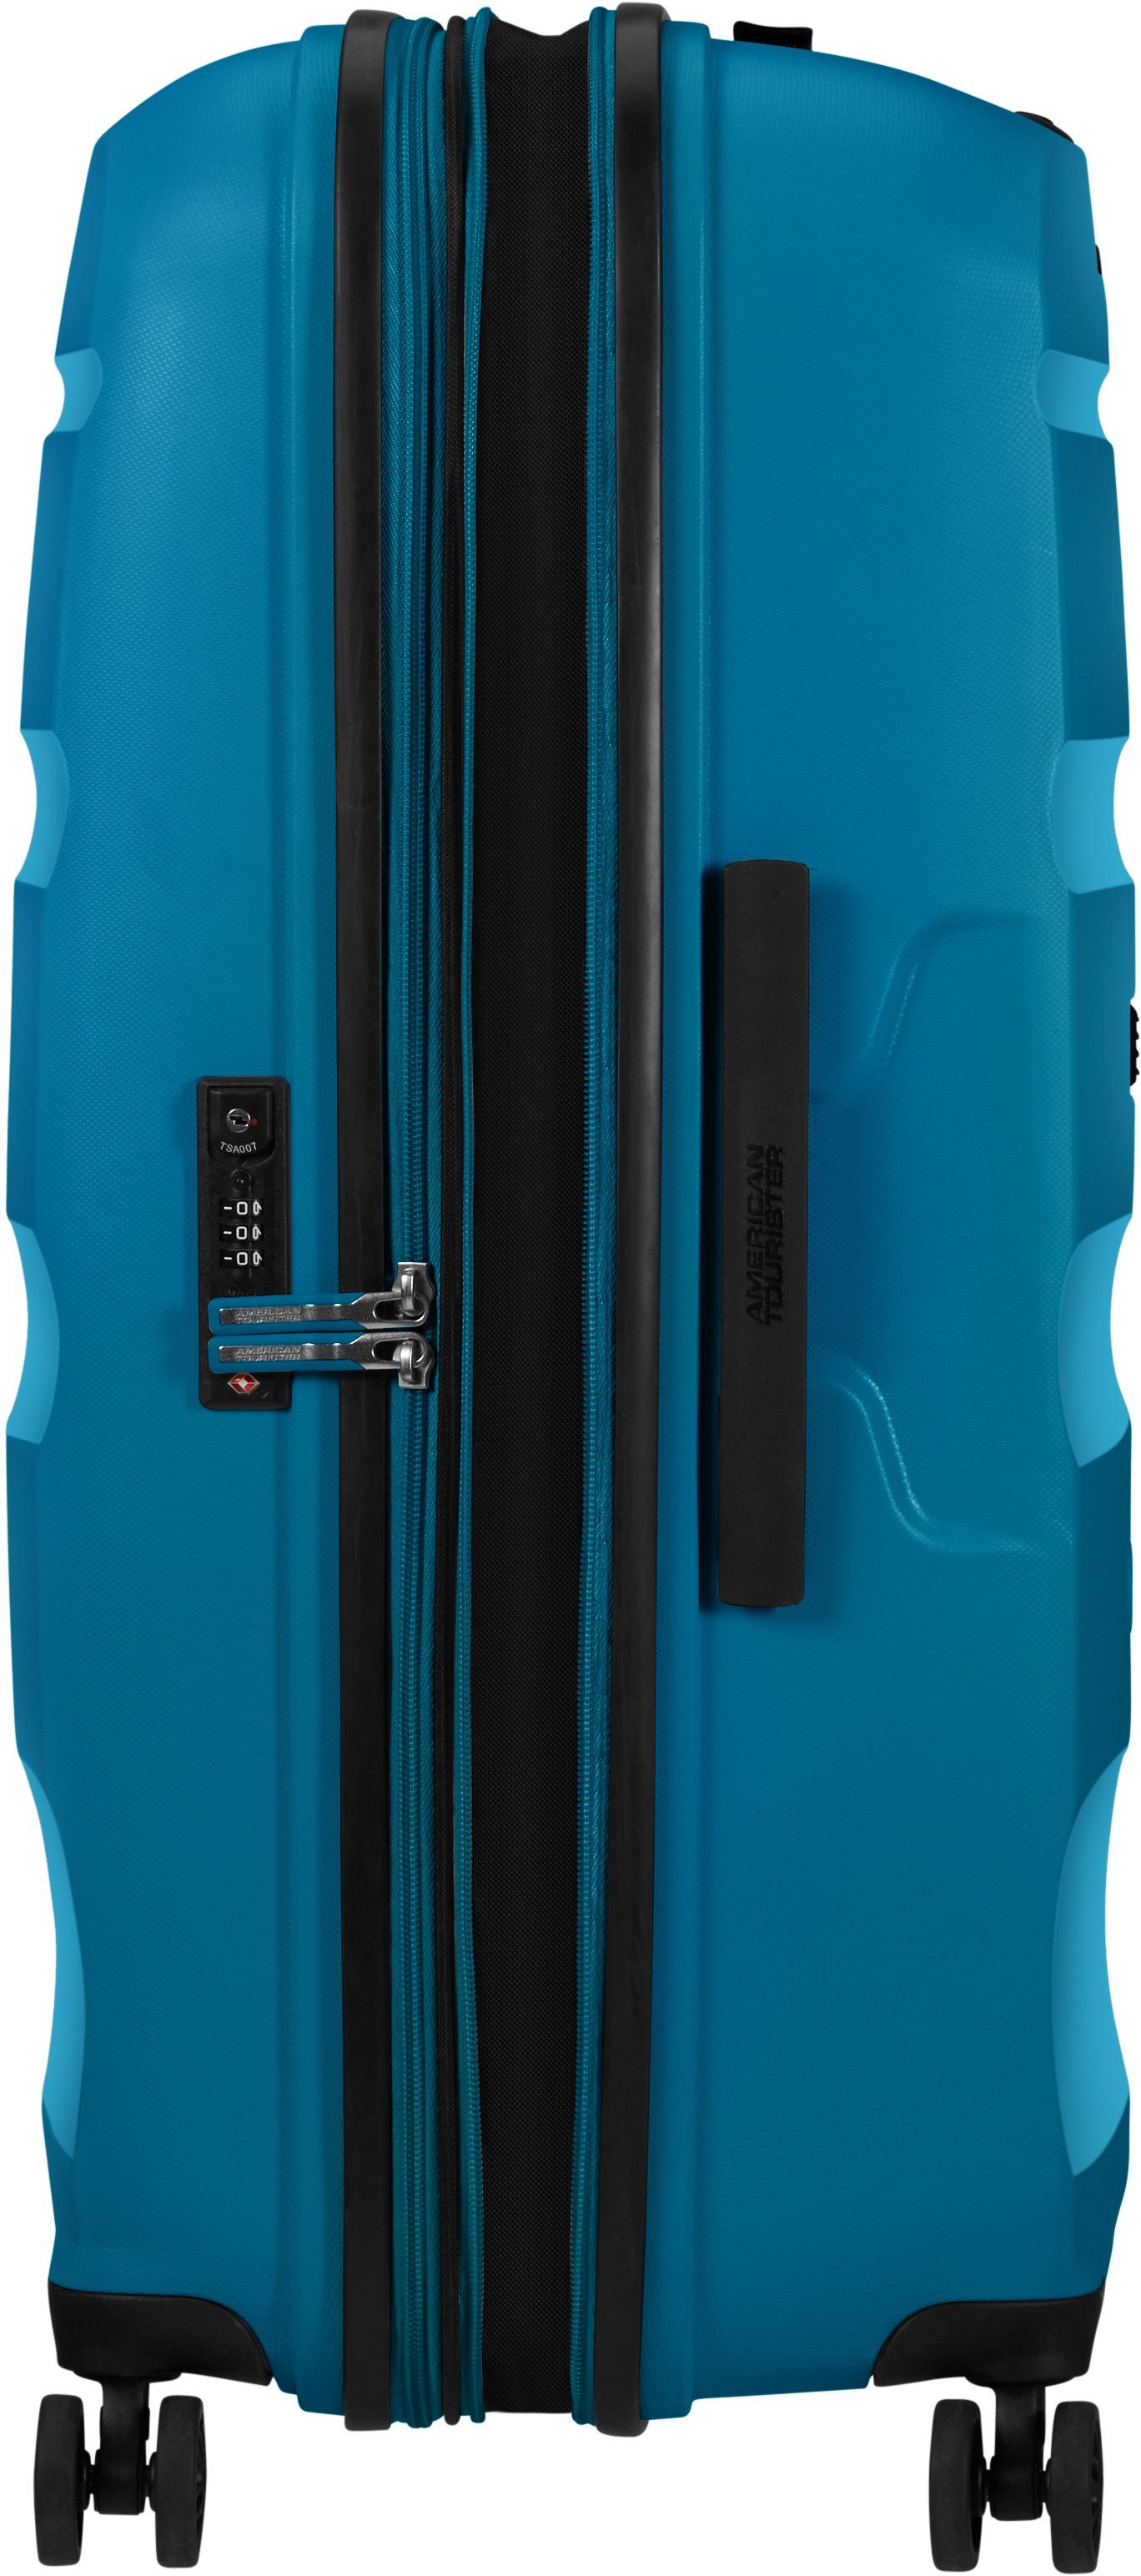 American Tourister® DLX, mit Blue cm, 4 Hartschalen-Trolley Bon Air Seaport 75 Rollen, Volumenerweiterung